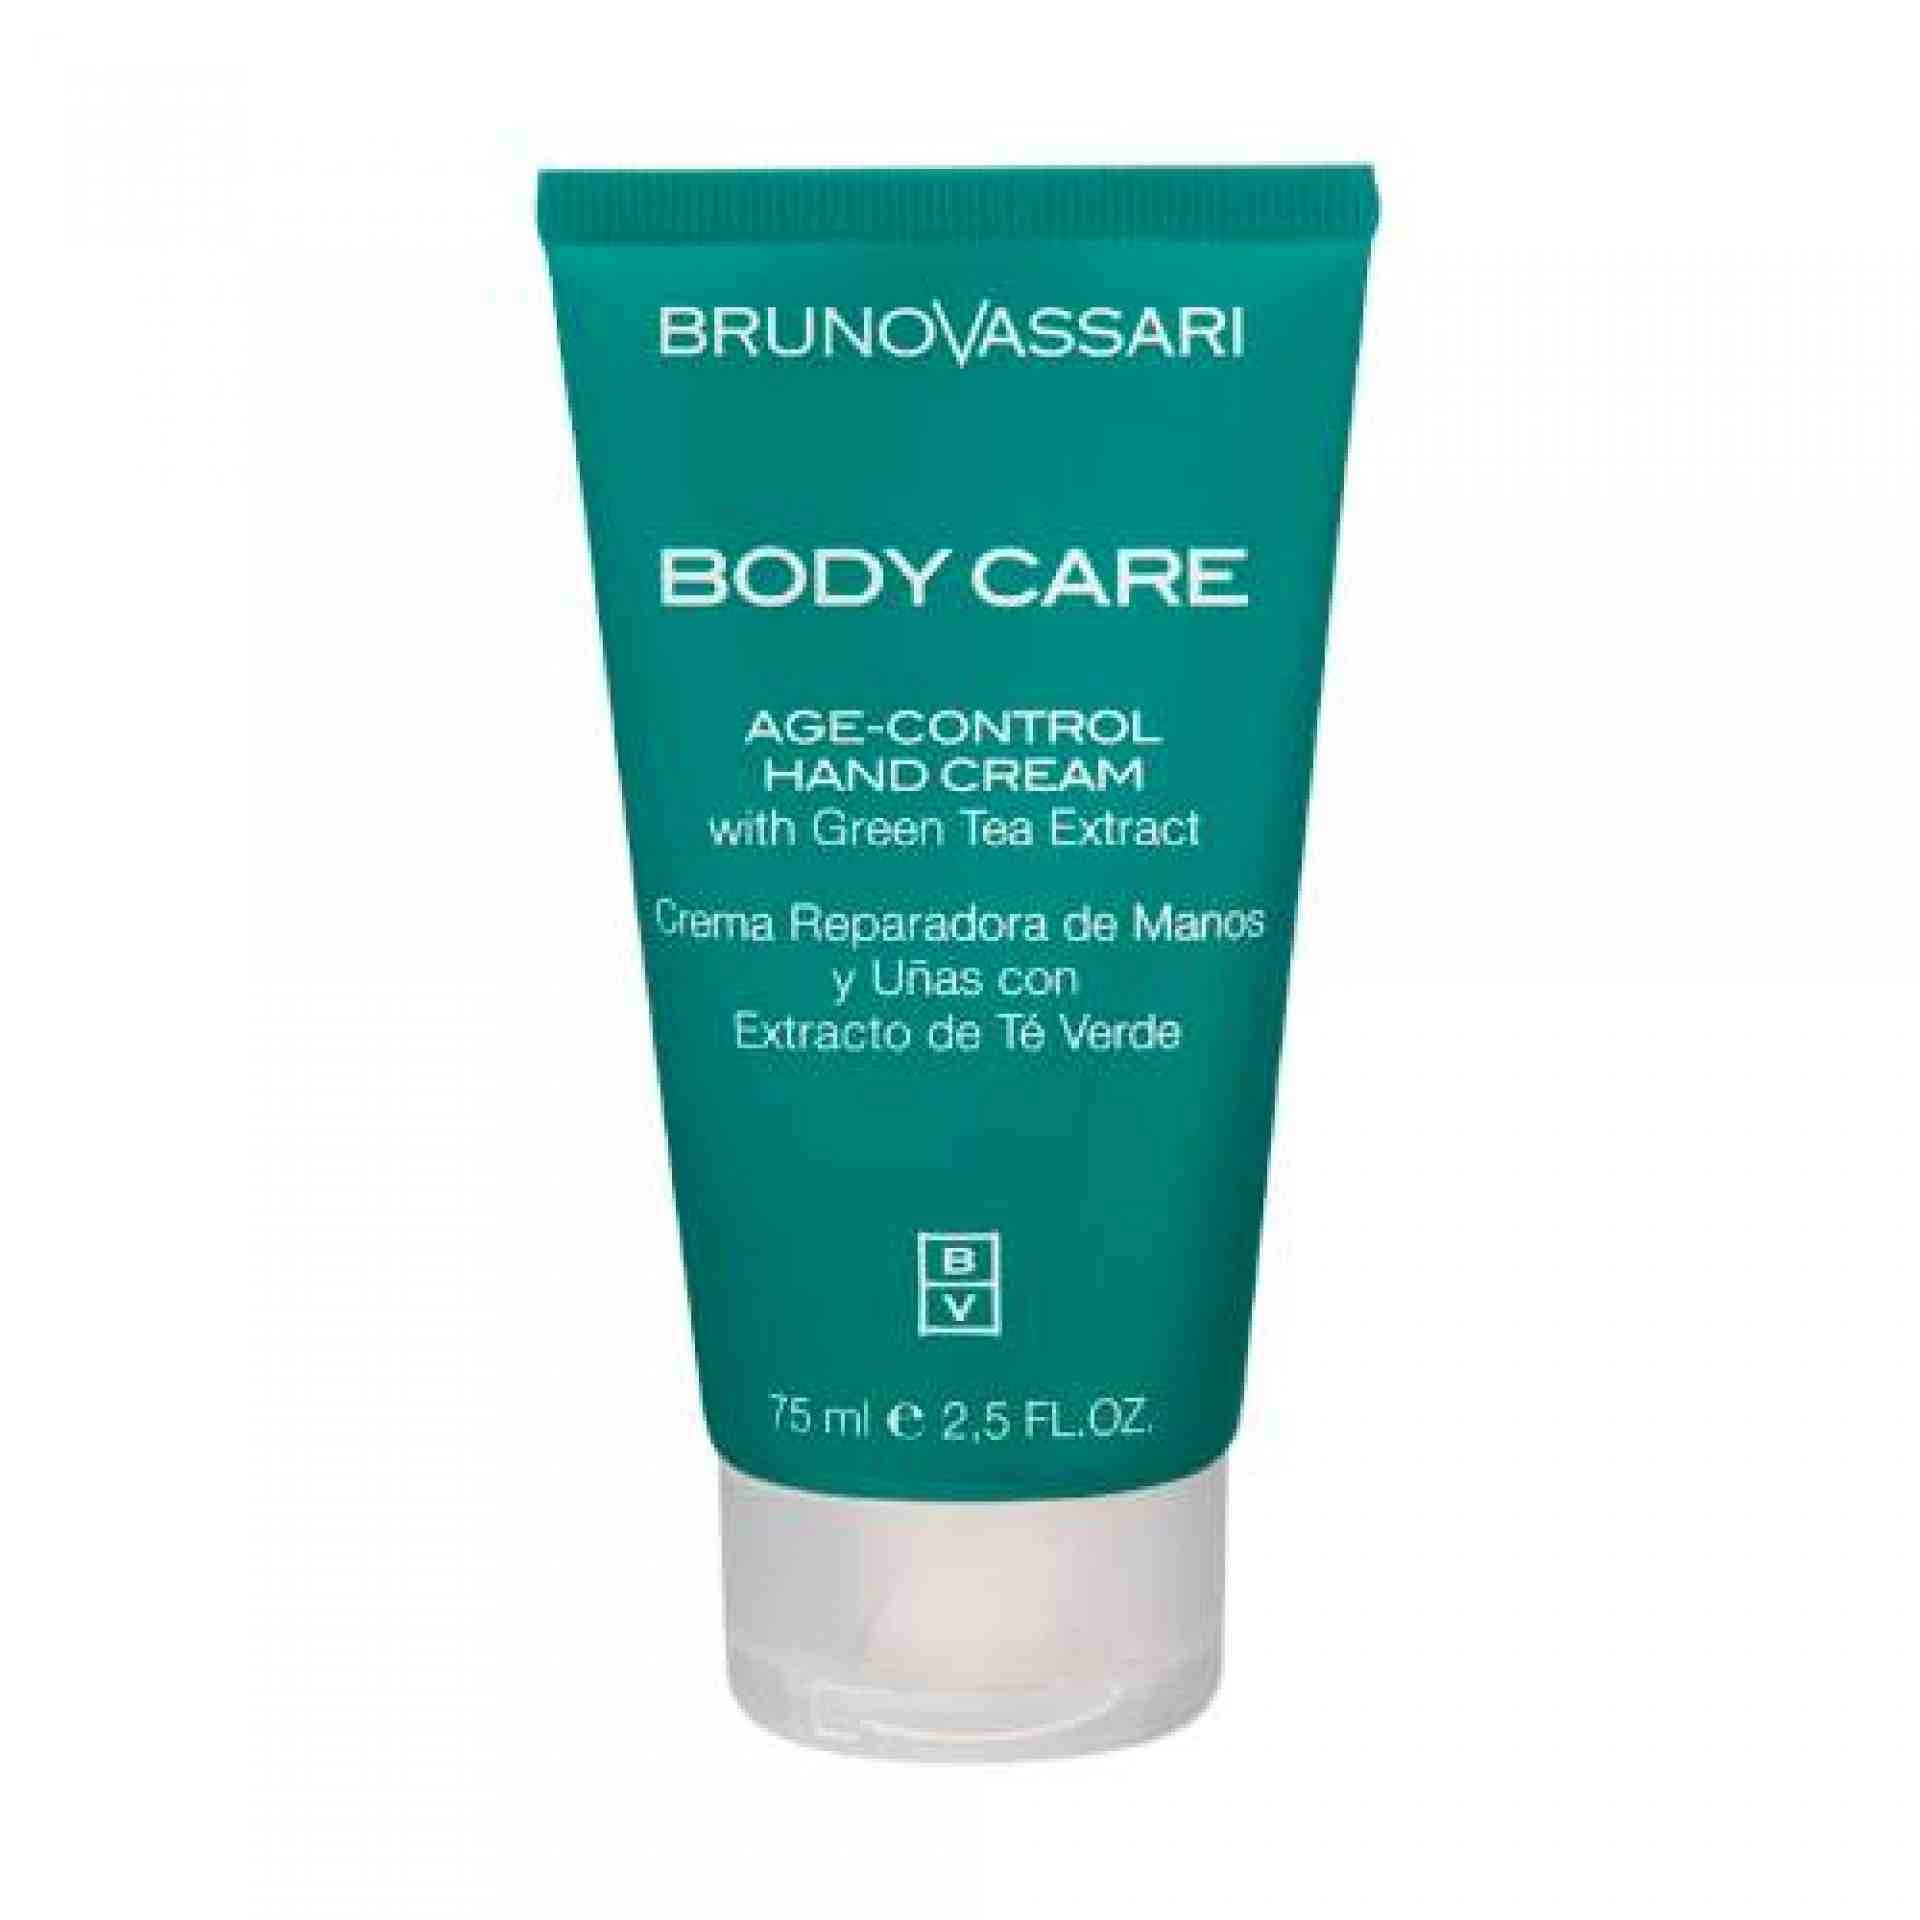 Age Control Hand Cream | Crema de manos 75ml - Body Care - Bruno Vassari ®